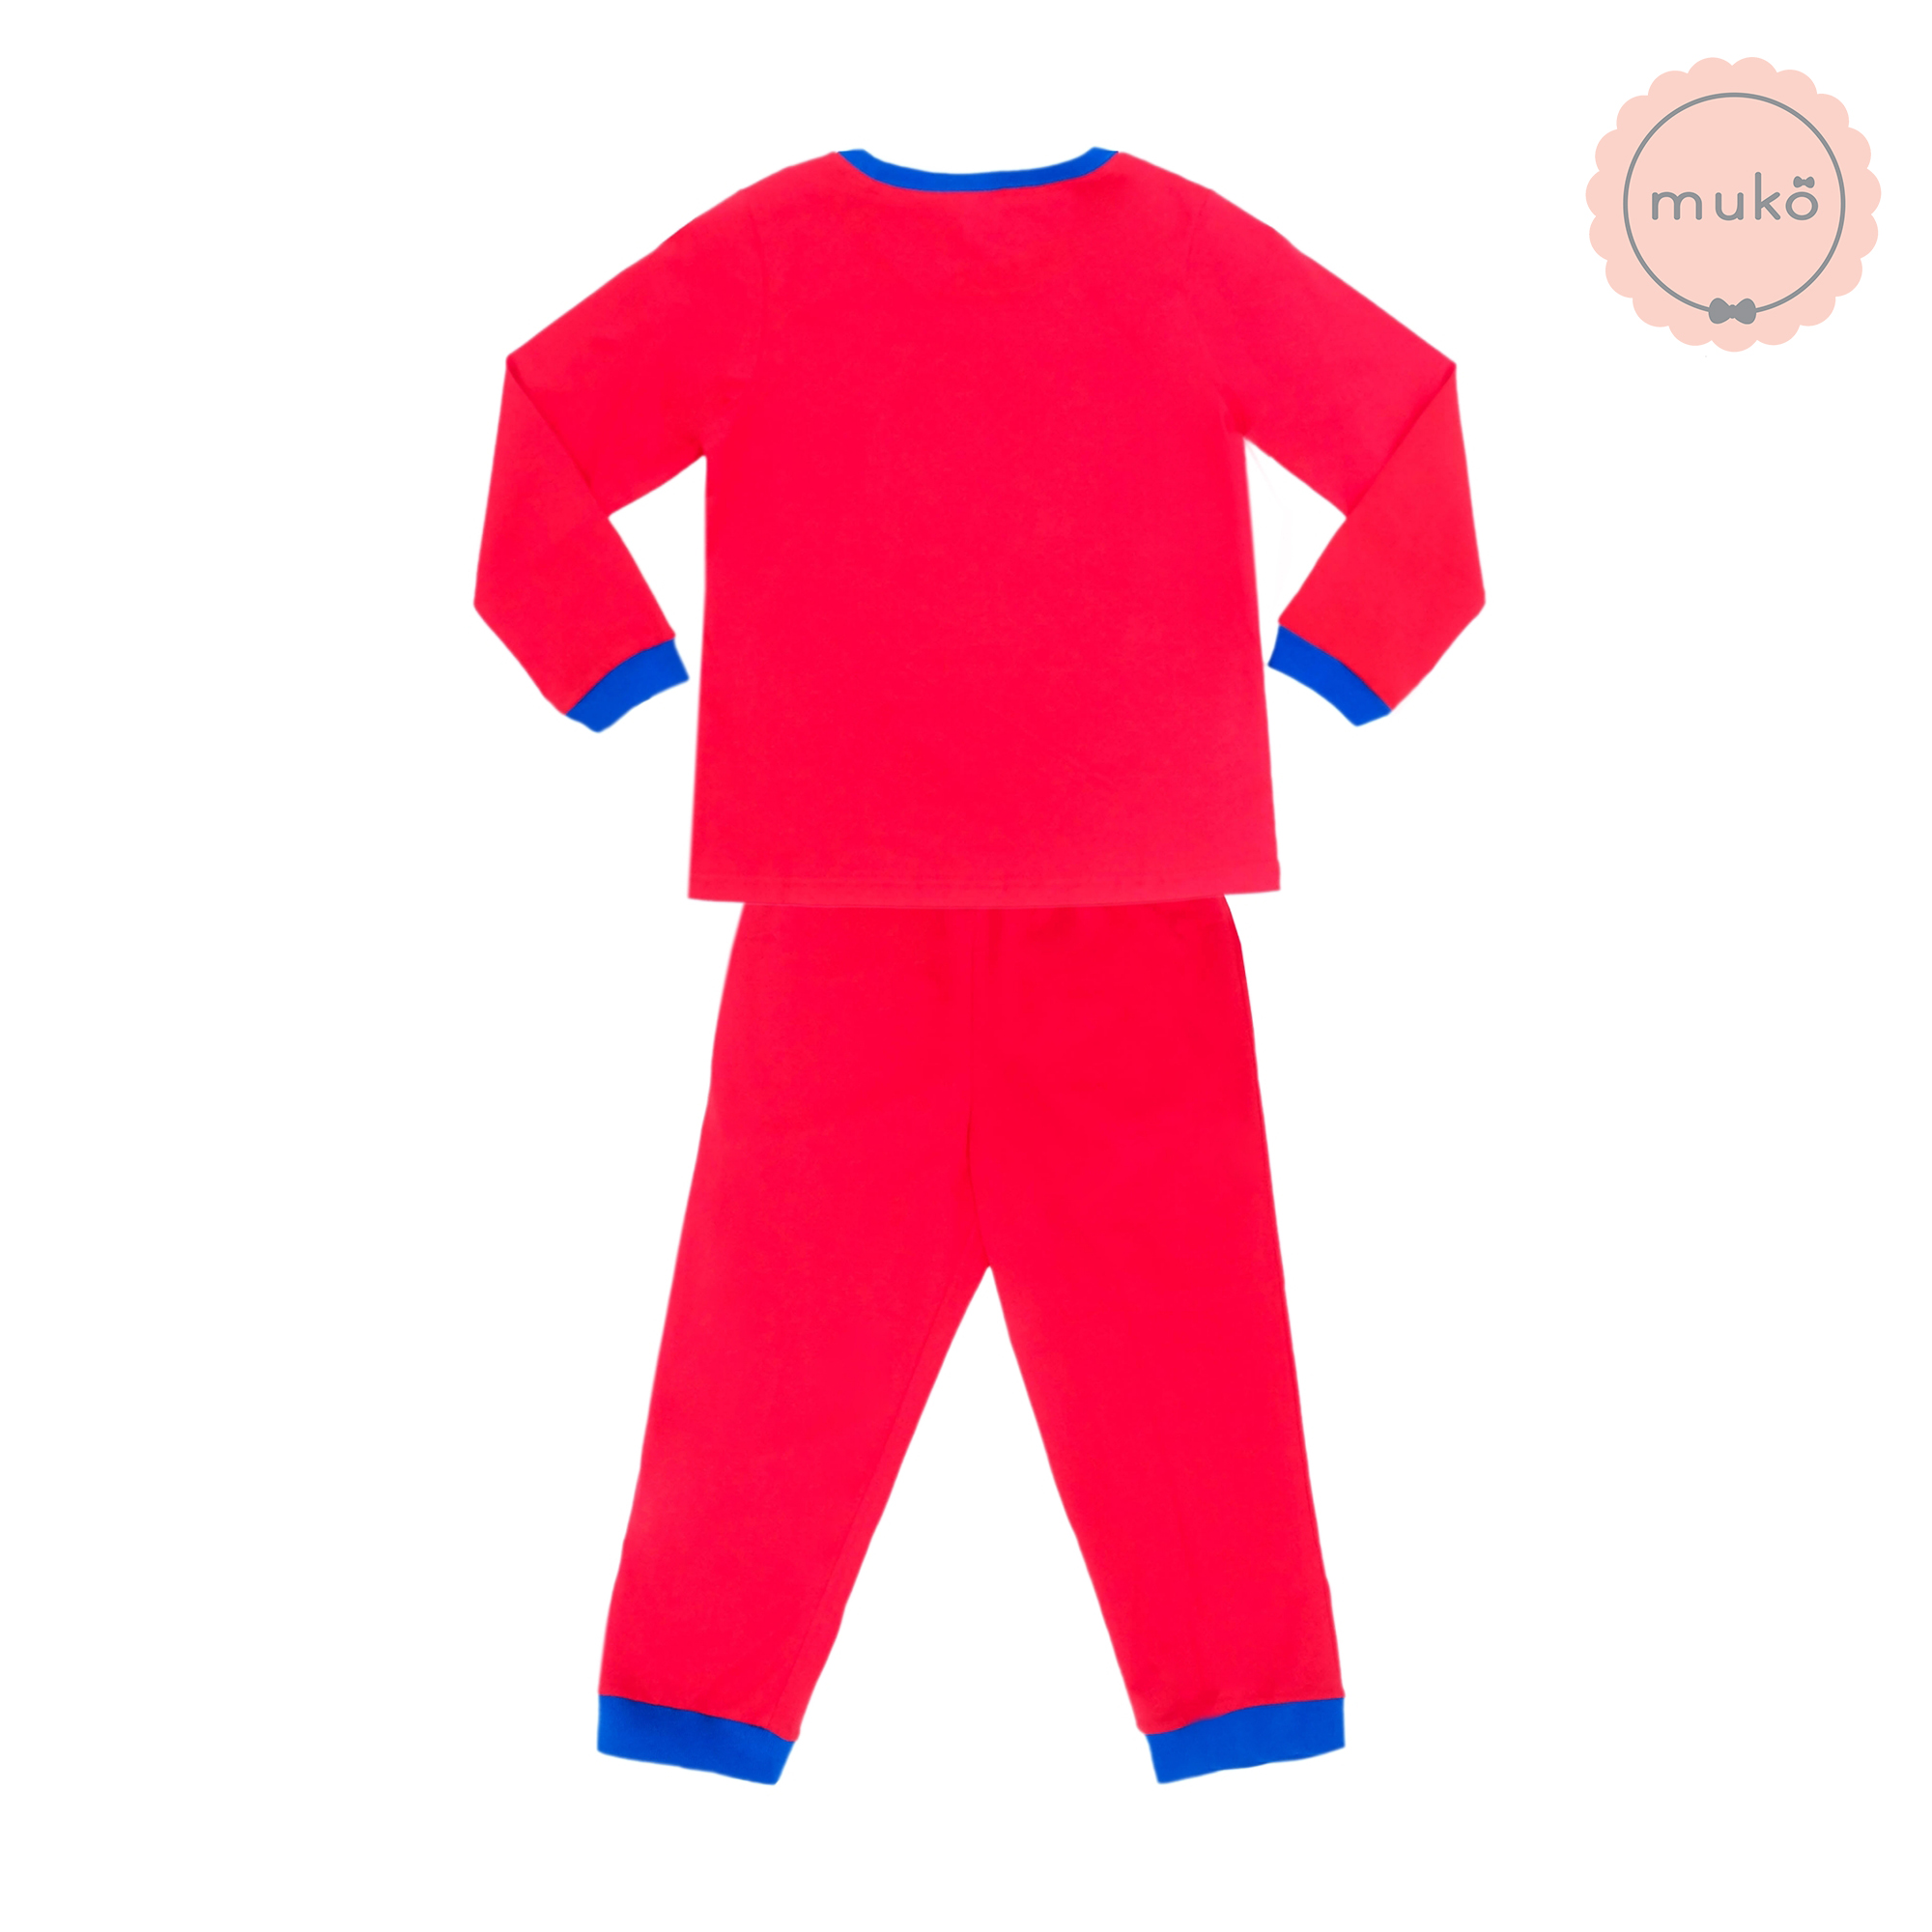 ชุดเด็ก 6-7 ขวบ แขนยาว-ขายาว (Size L) DPC127-09-XL-Red L ลายเจ้าหญิงสโนไวท์ Snow white สีแดง (แดงทั้งชุดขอบน้ำเงิน)